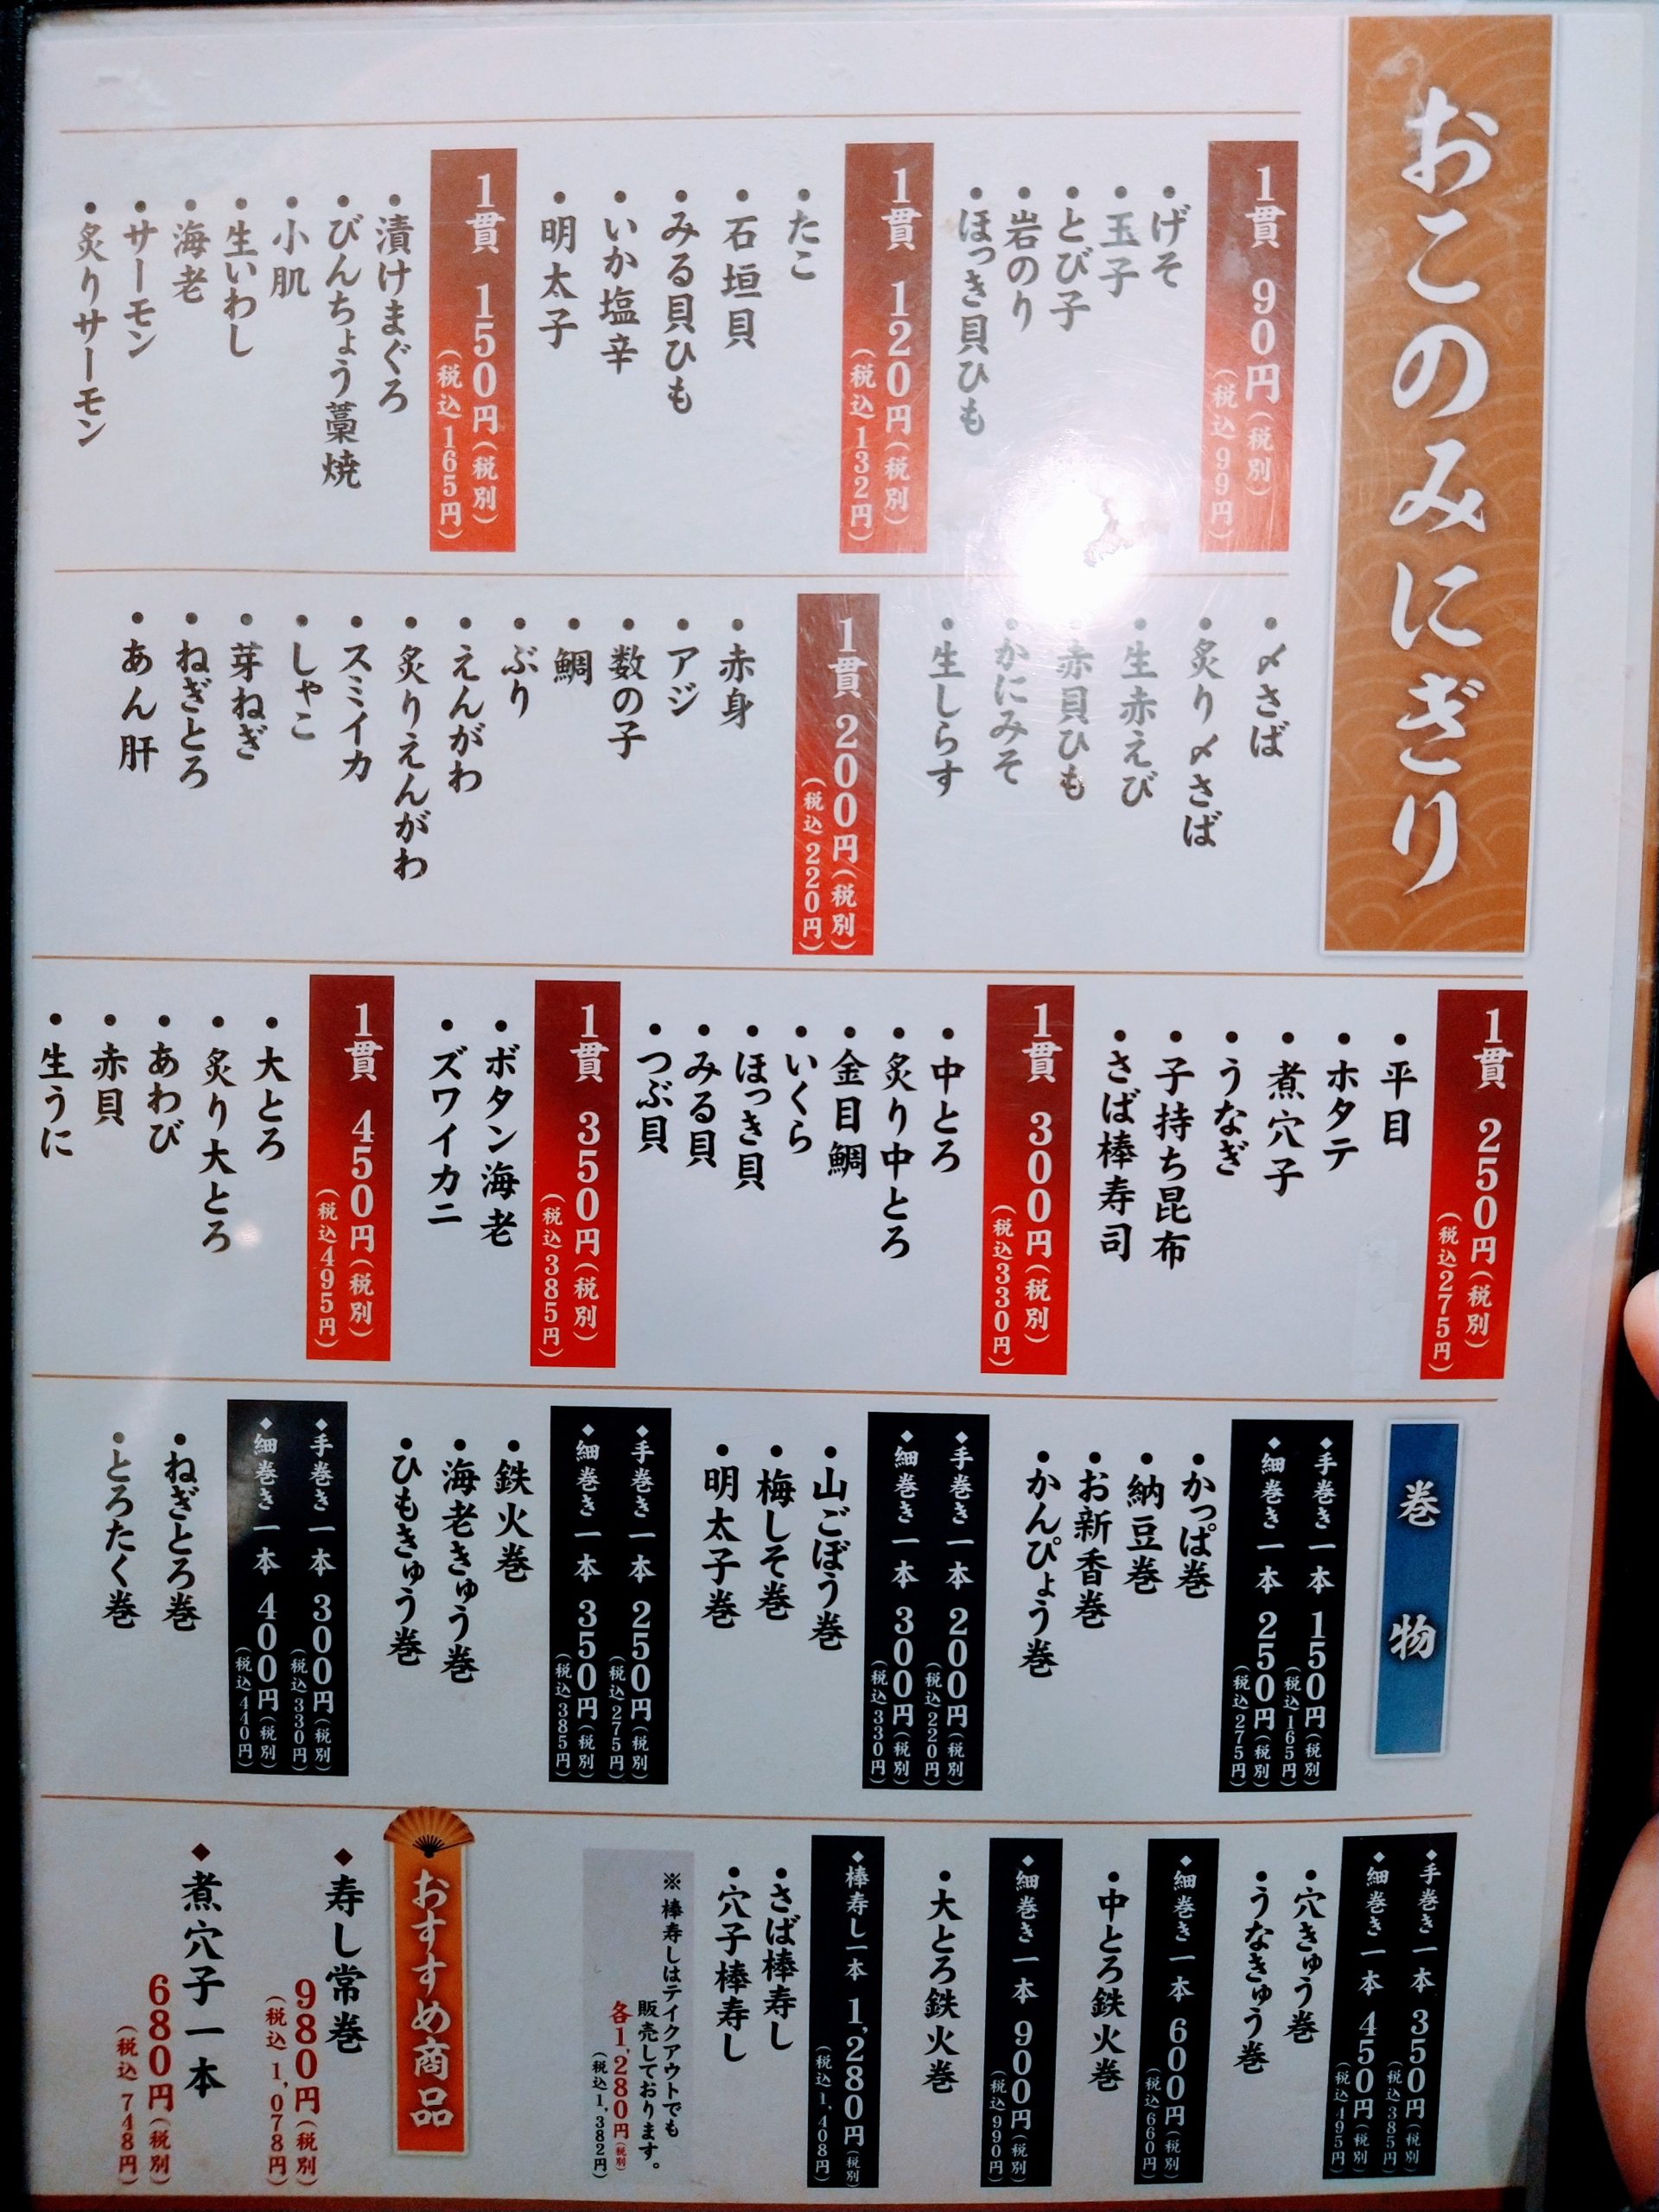 sushi-tsune-menu-01